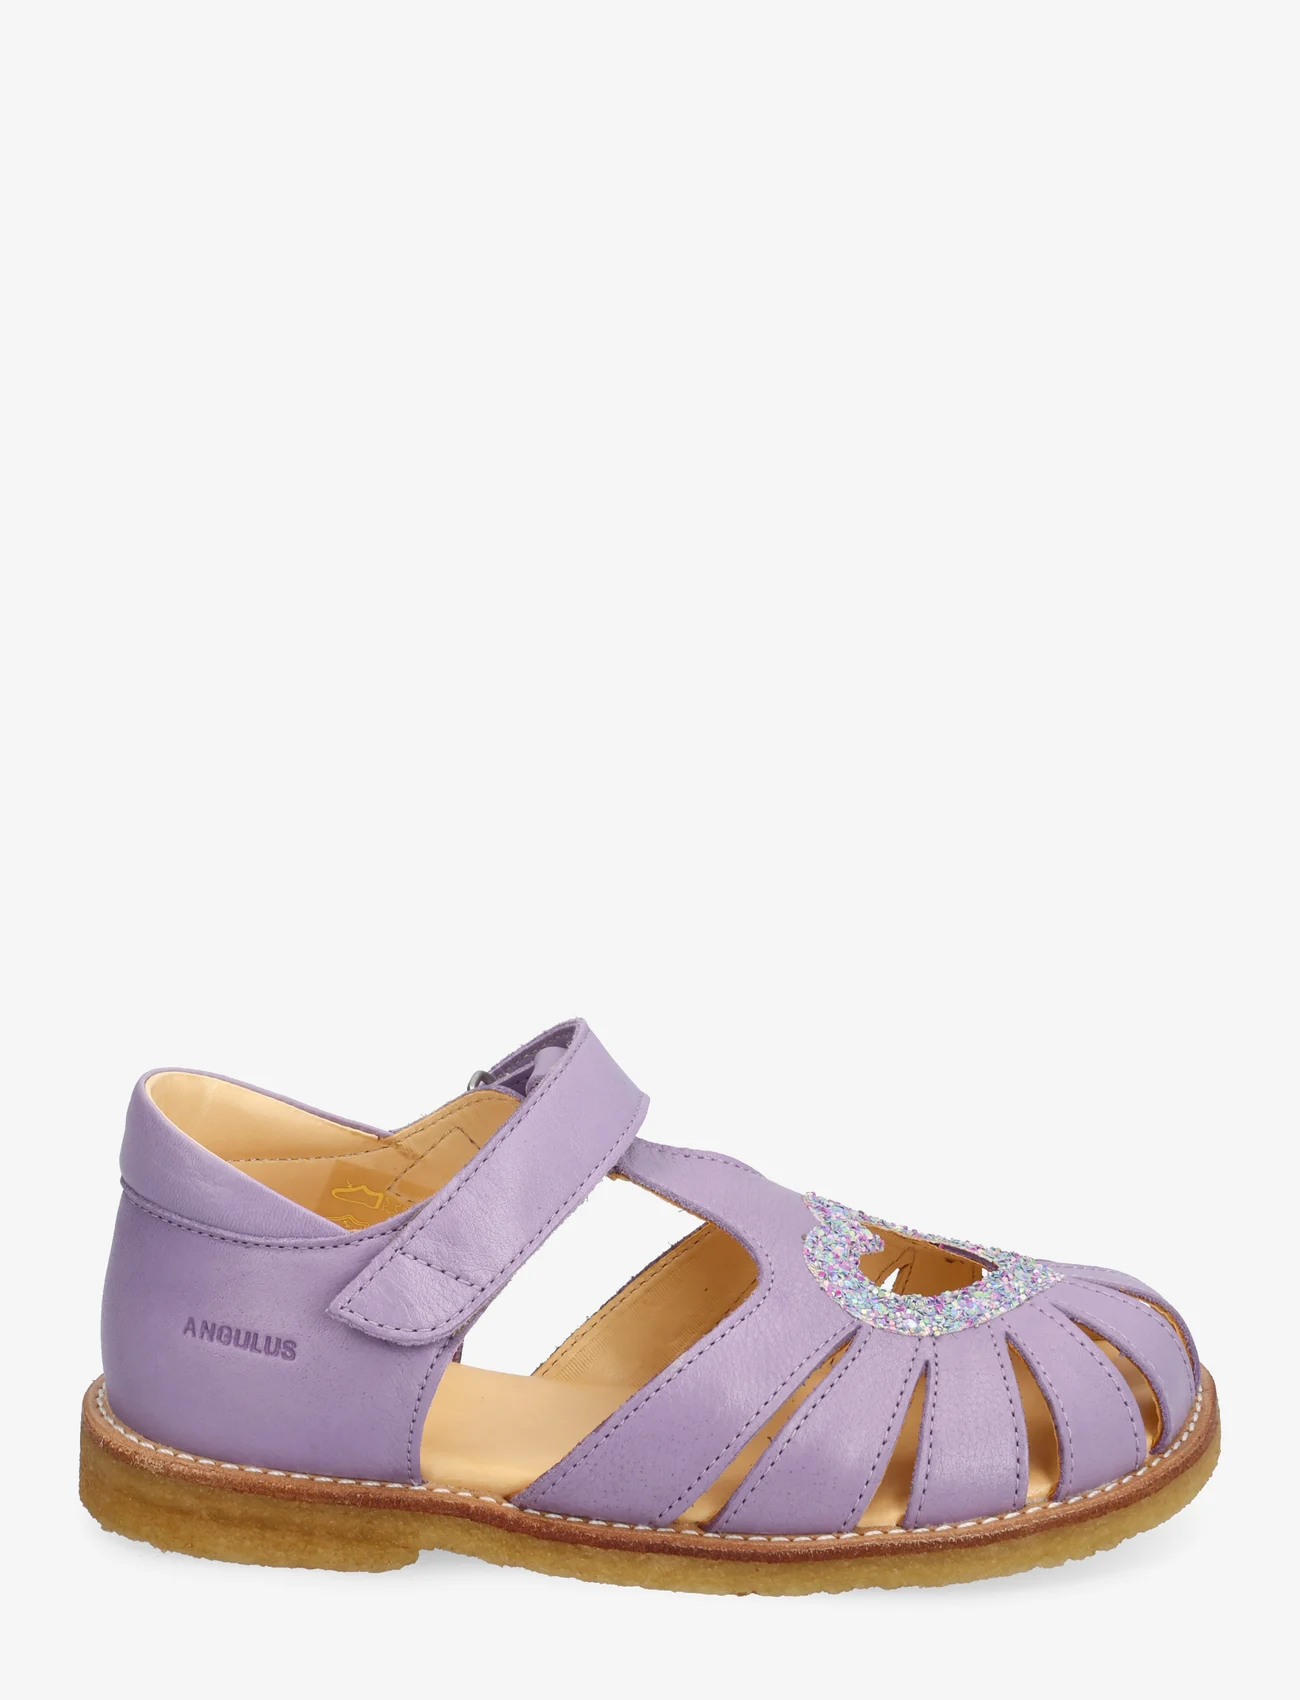 ANGULUS - Sandals - flat - closed toe - - kesälöytöjä - 2720/2753 lilac/confetti glitt - 1